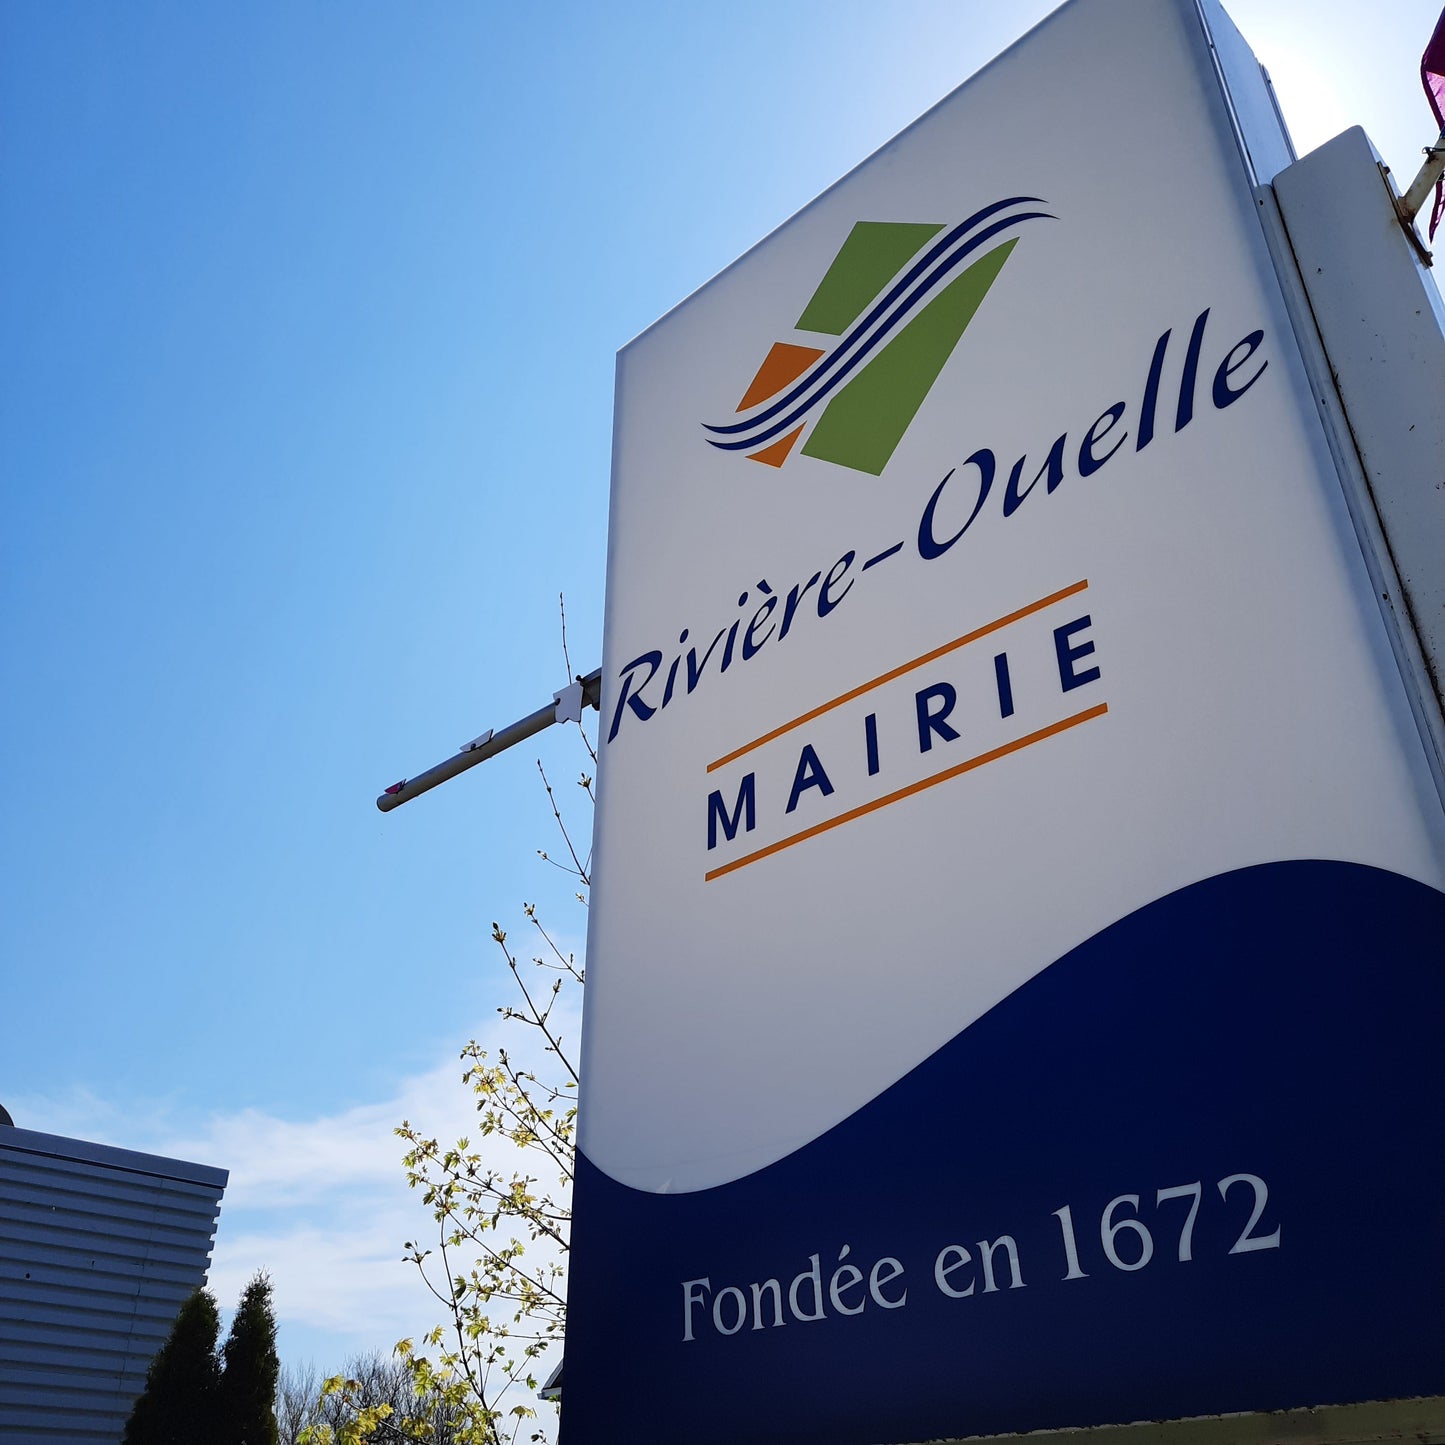 Hôtel De Ville Rivière-Ouelle (Mairie)